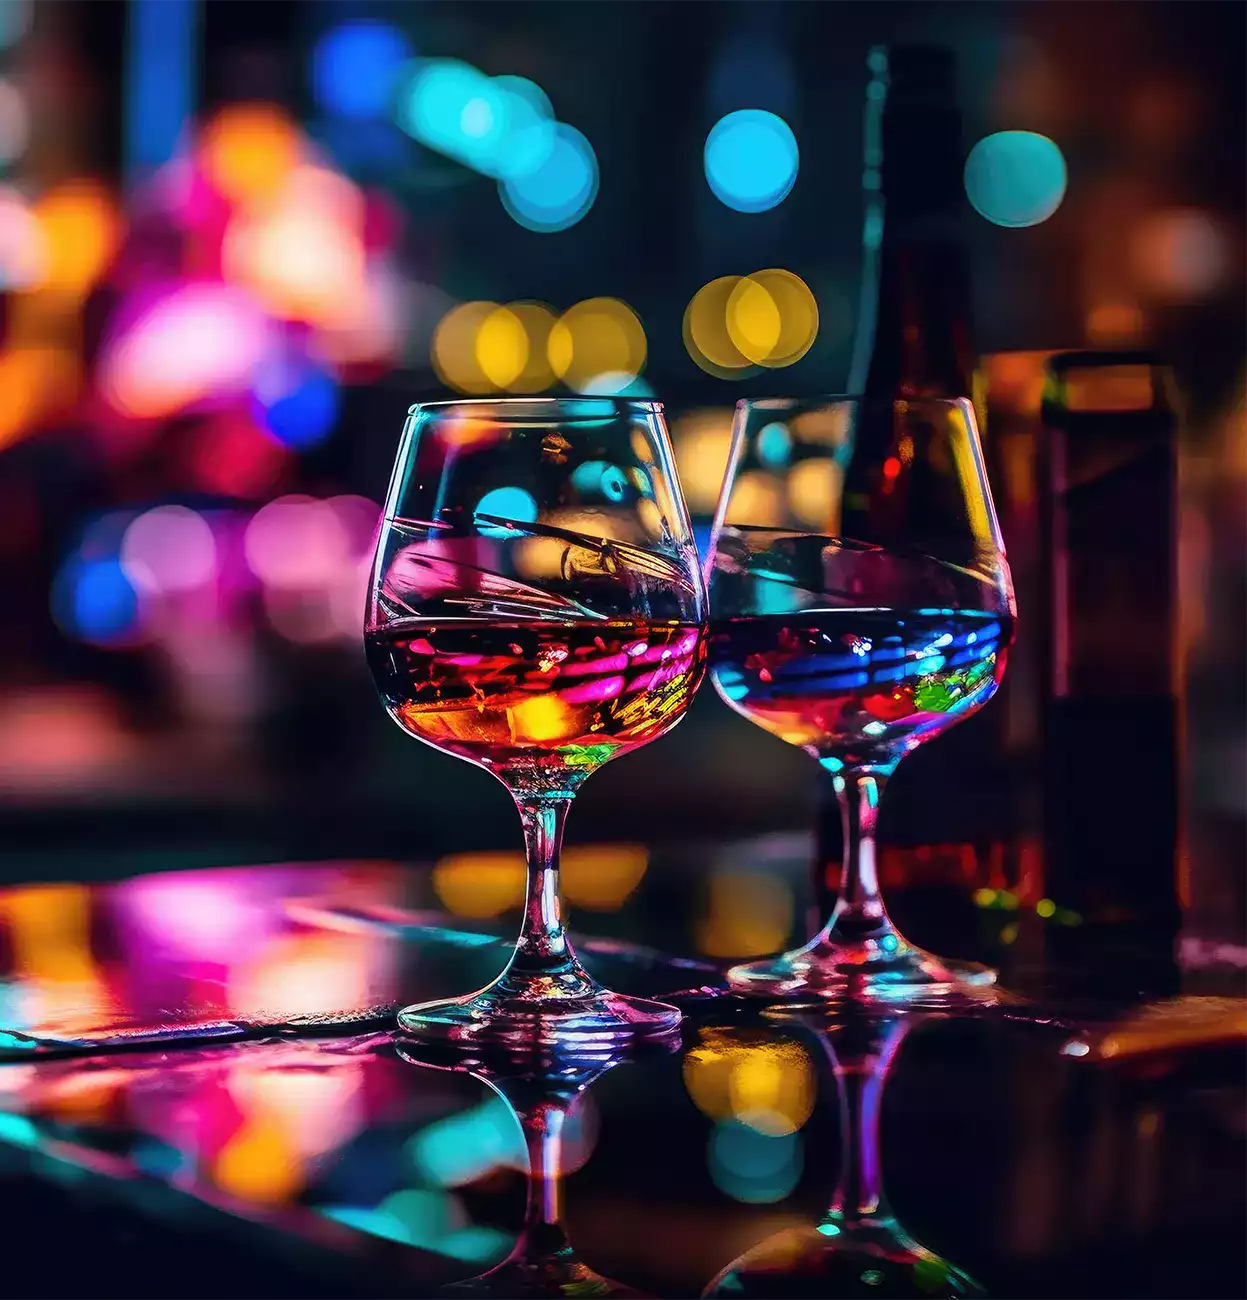 2 ποτήρια κρασιού πάνω σε ένα τραπέζι σε νυχτερινό background.